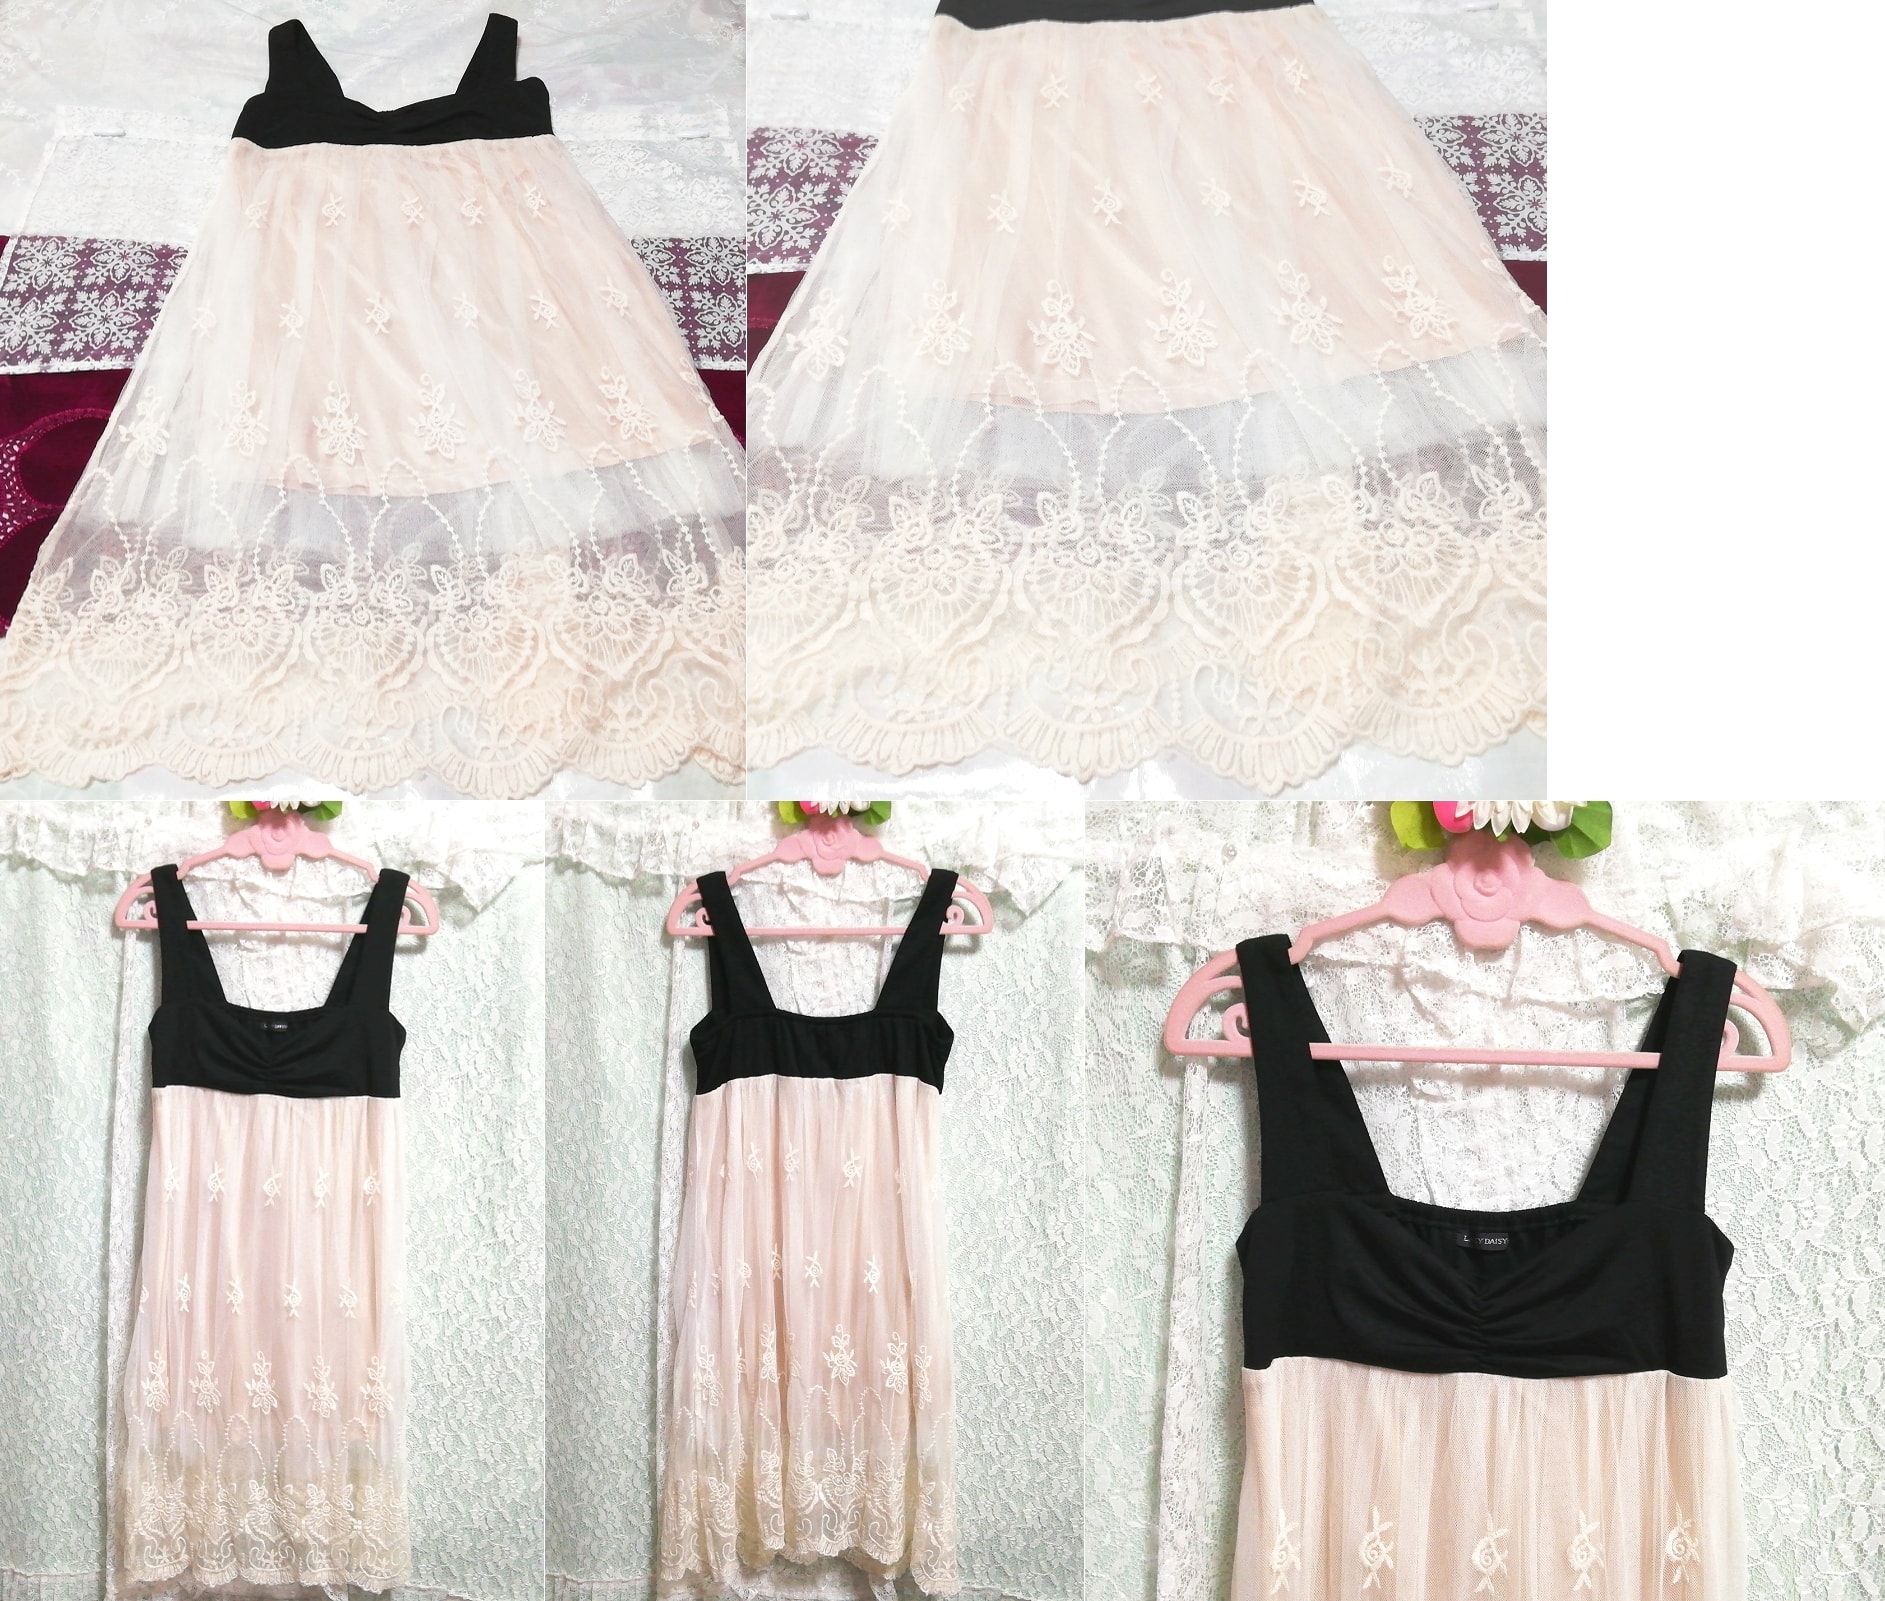 검은색 조끼 꽃무늬 흰색 자수 레이스 스커트 네글리제 잠옷 민소매 드레스, 패션, 숙녀 패션, 잠옷, 잠옷